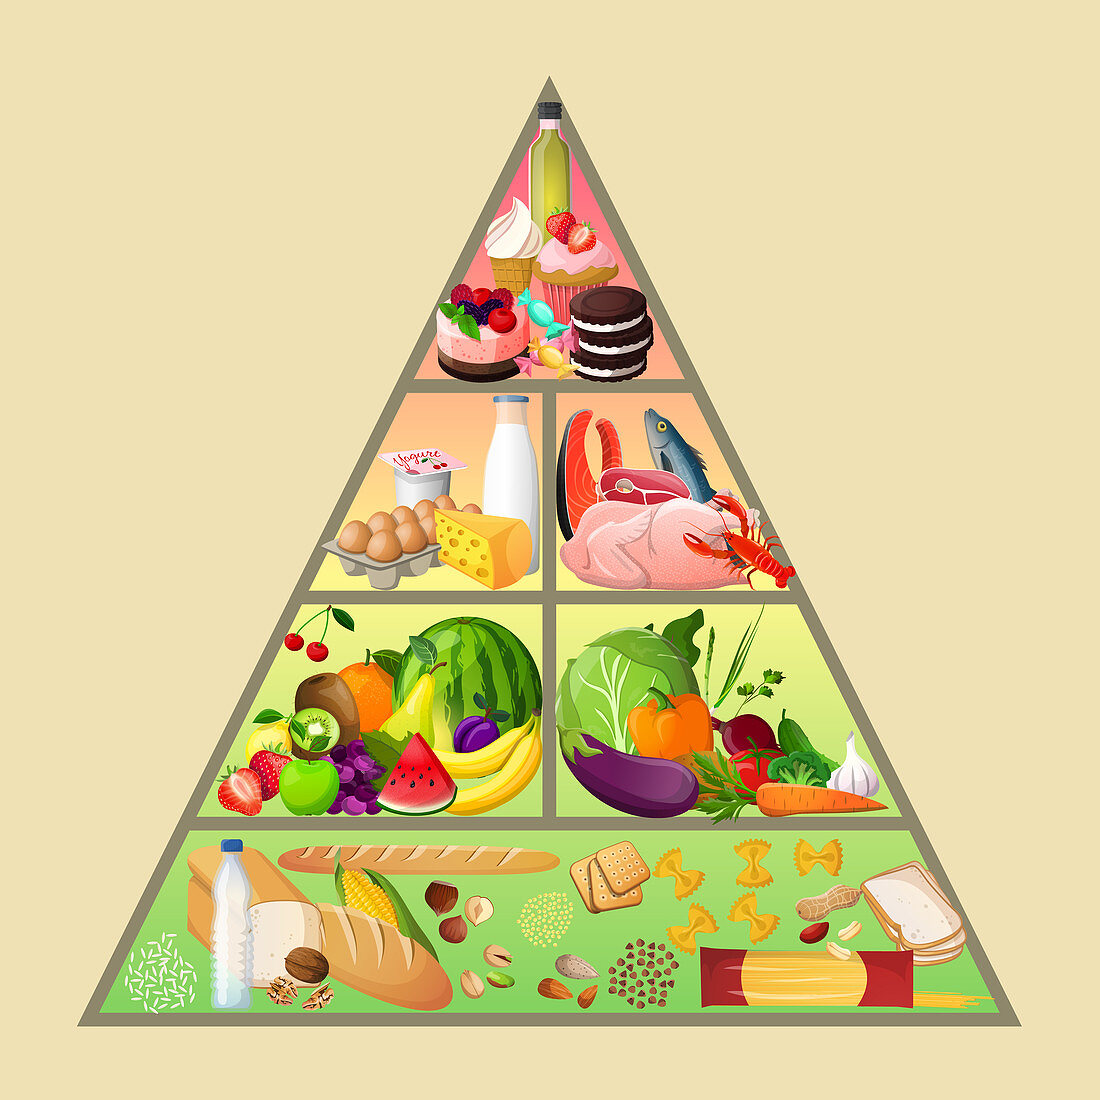 Food pyramid, illustration